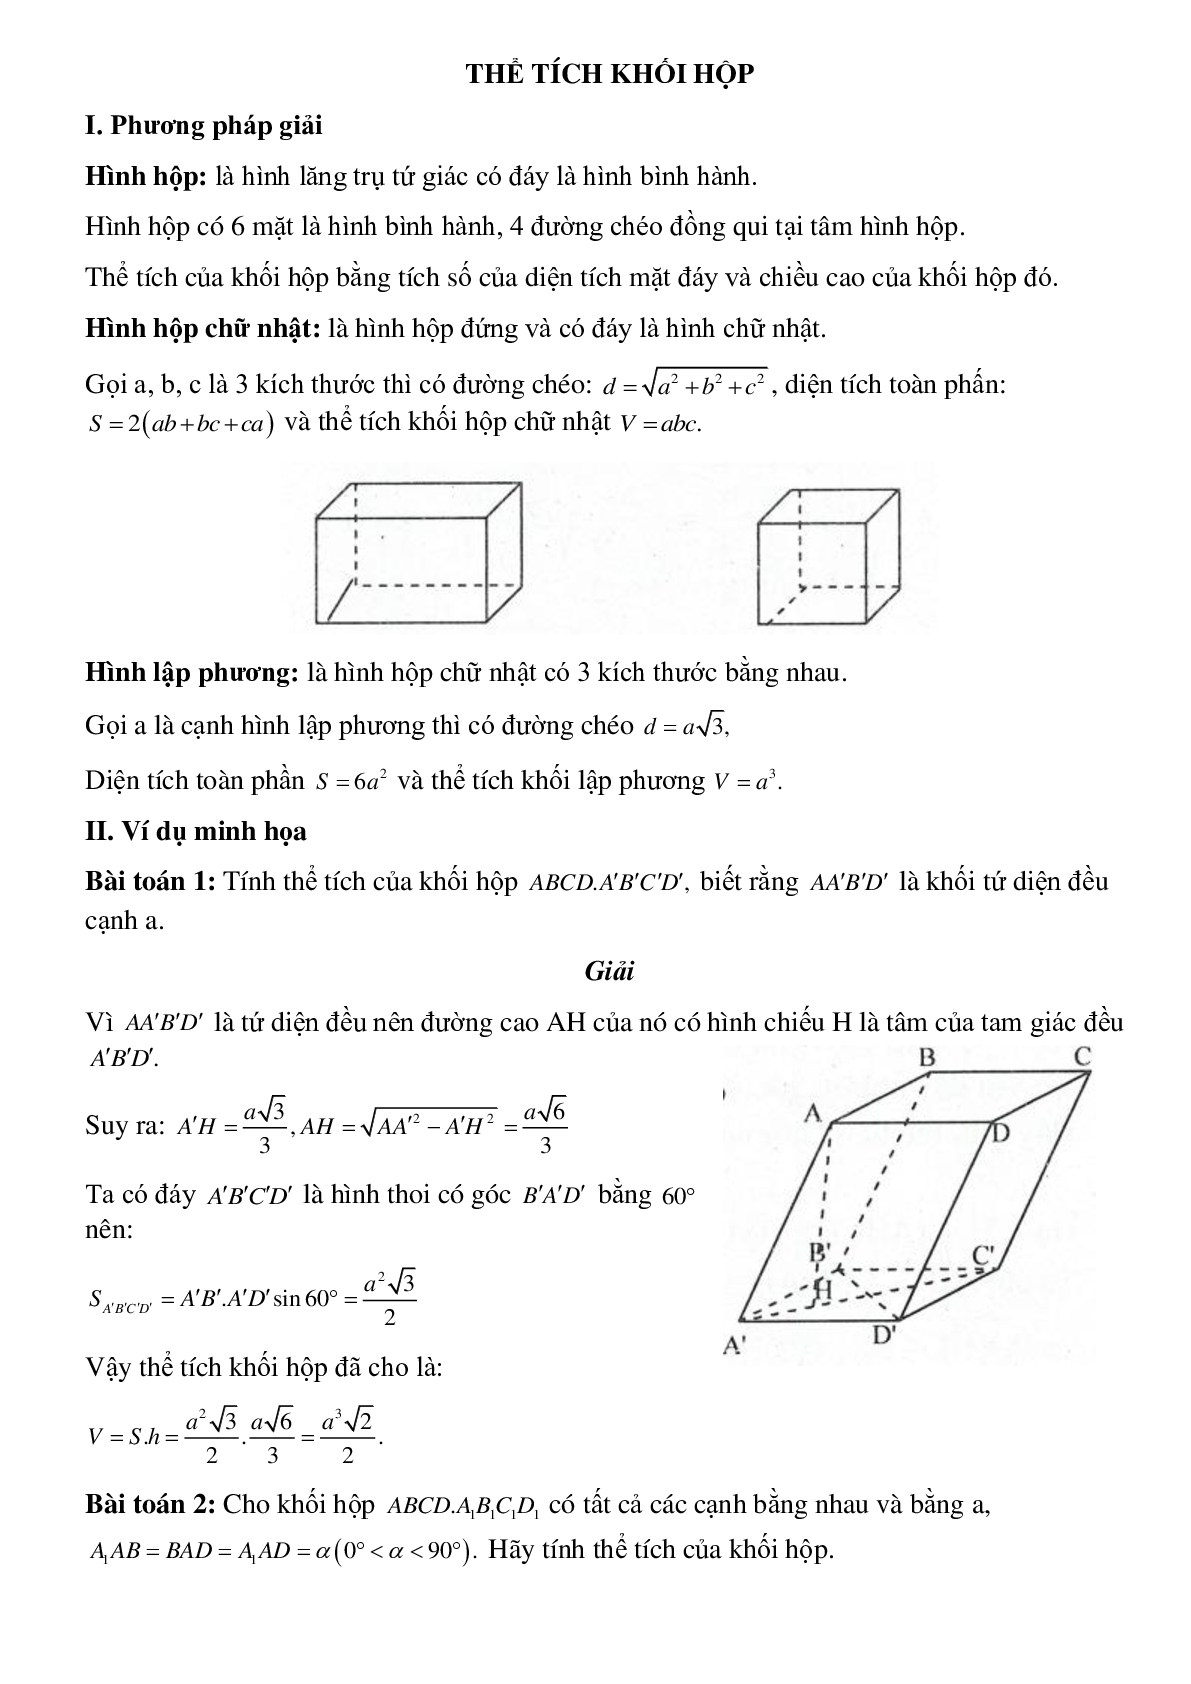 Dạng bài tập Thể tích khối hộp (trang 1)